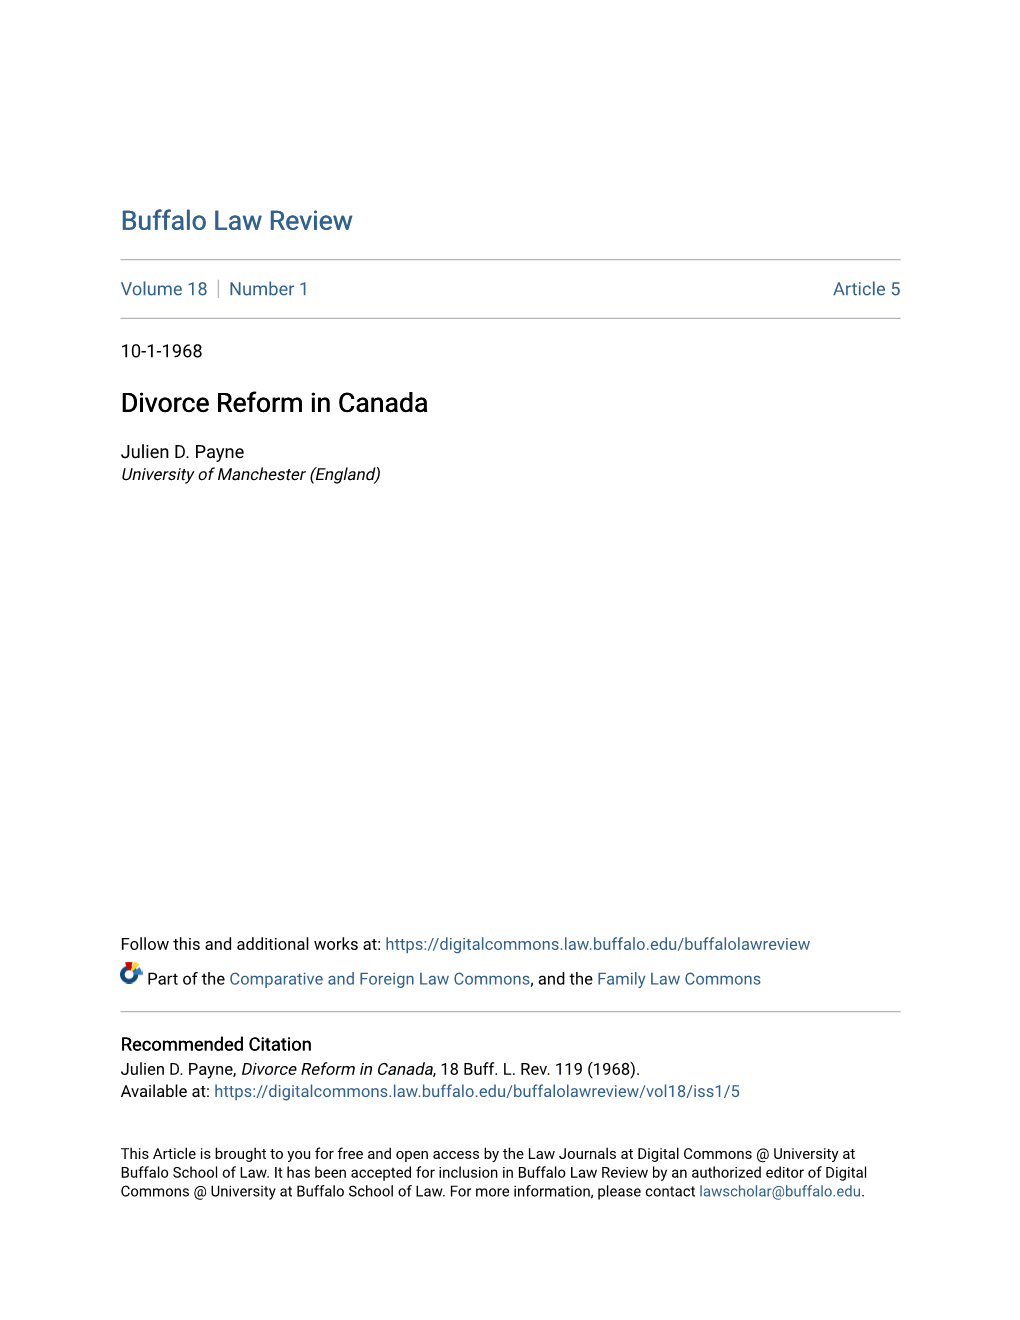 Divorce Reform in Canada